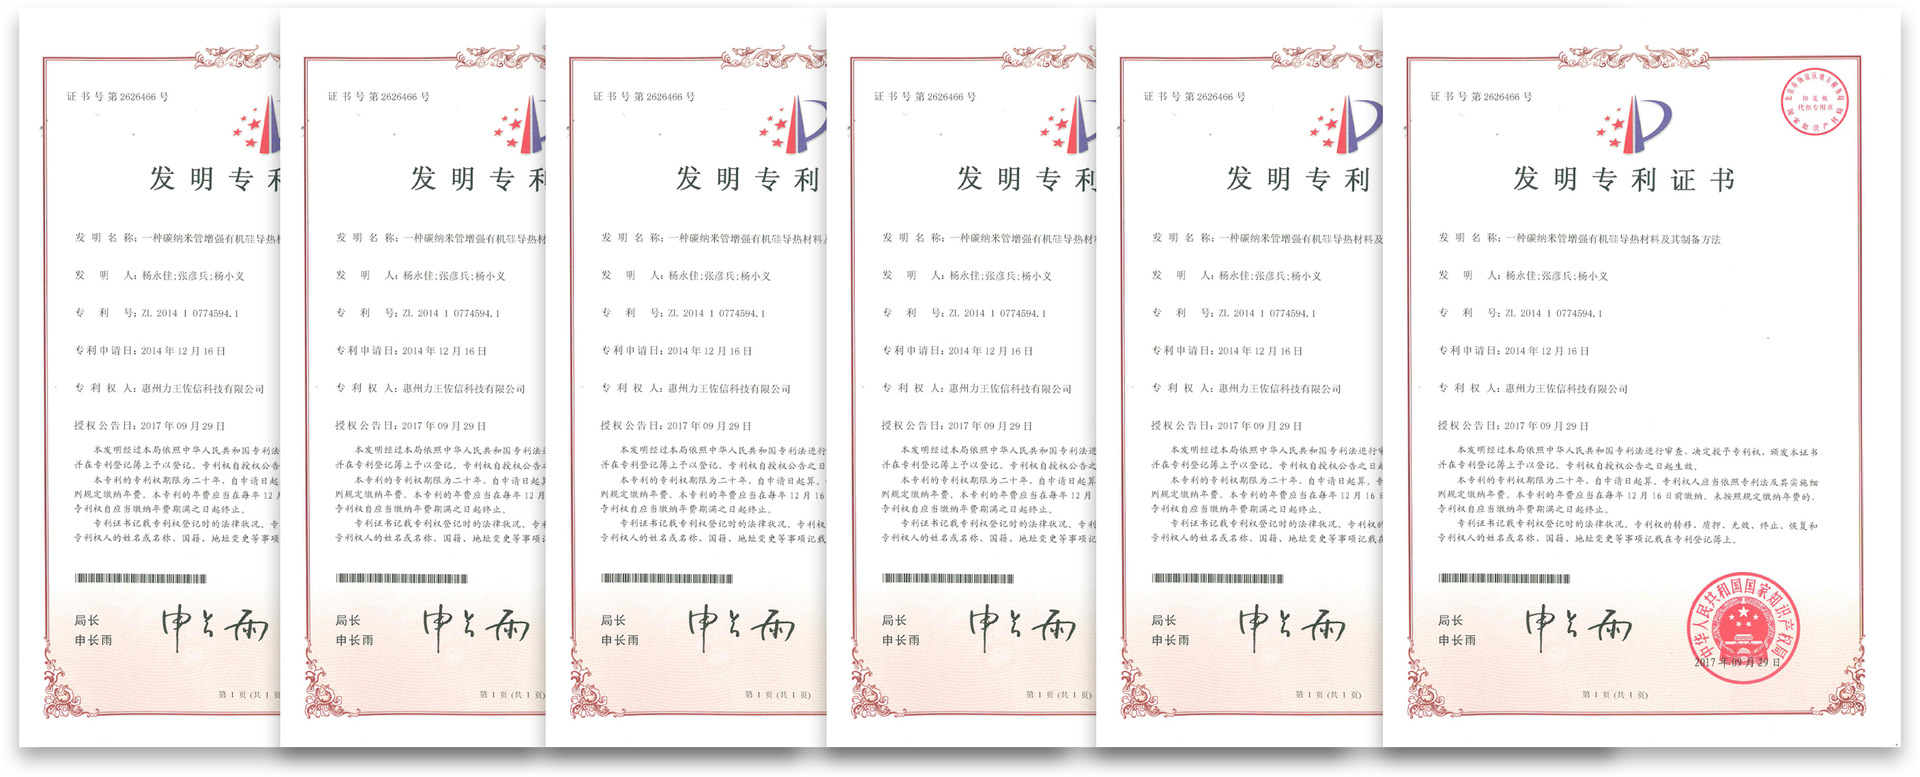 力王新材料（惠州）有限公司荣誉认证证书国内2